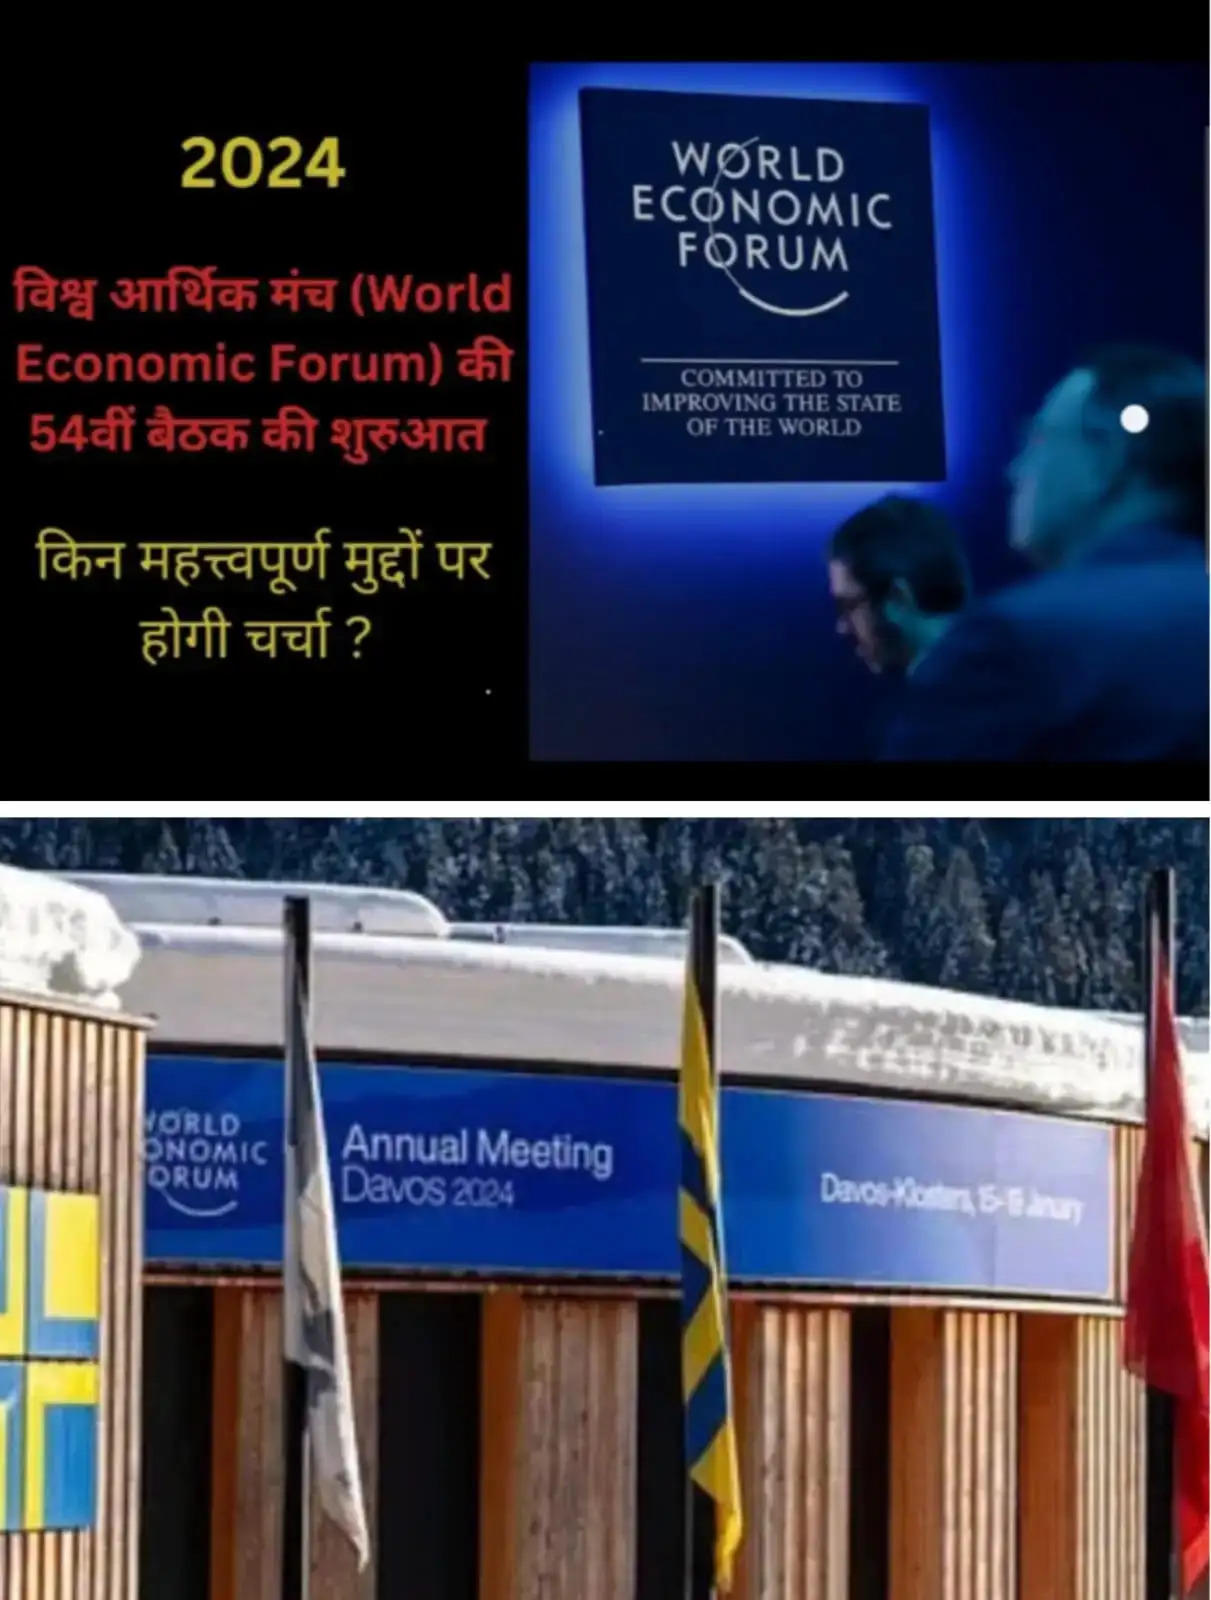 भारत का 54 वां विश्व आर्थिक मंच की थीम बिल्डिंग ट्रस्ट के तहत चर्चा व संवाद का जोरदार आगाज़